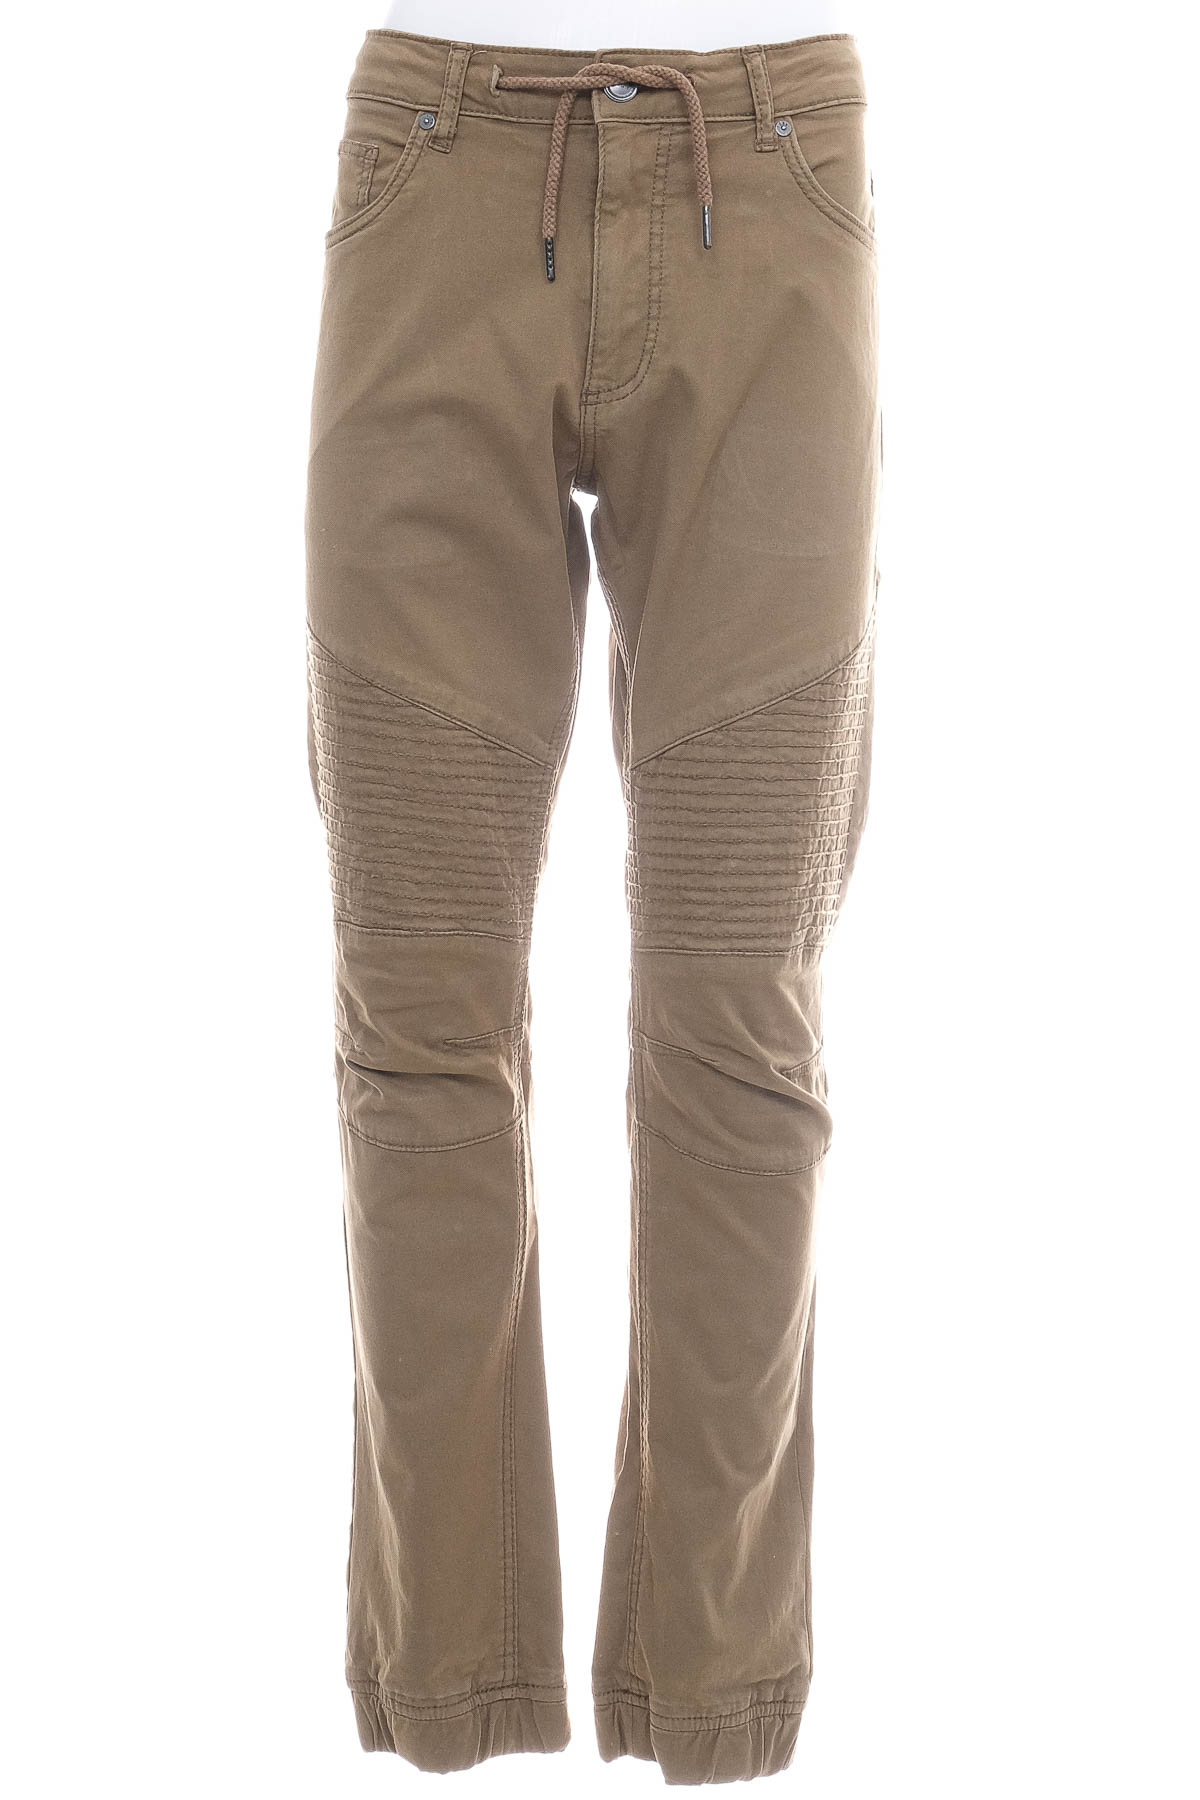 Pantalon pentru bărbați - FSBN - 0